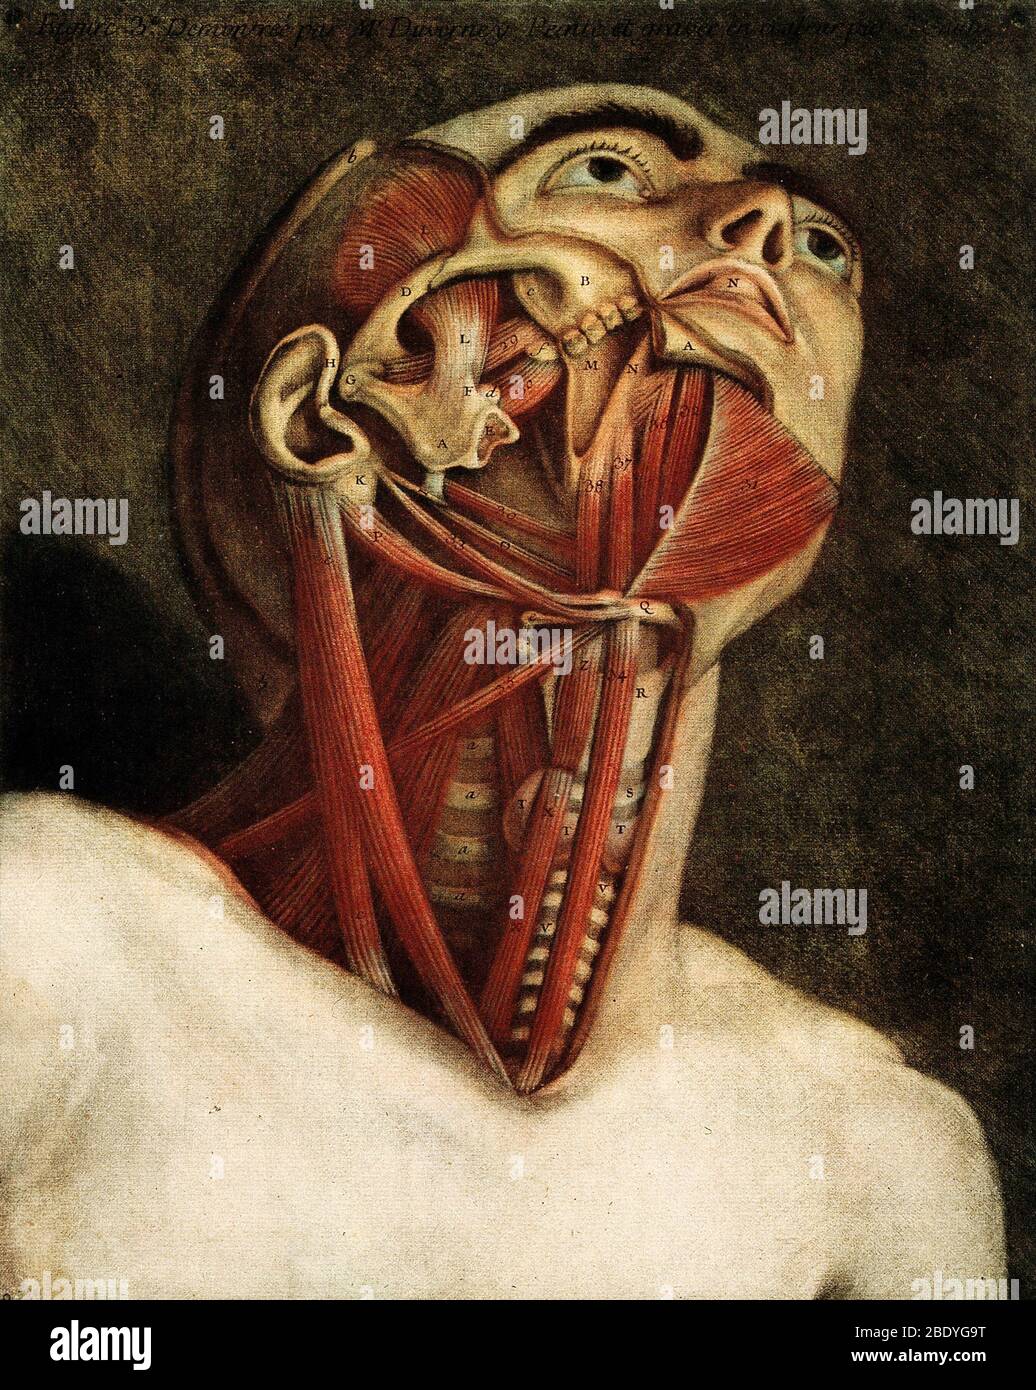 Dissection anatomique, illustration du XVIIIe siècle Banque D'Images